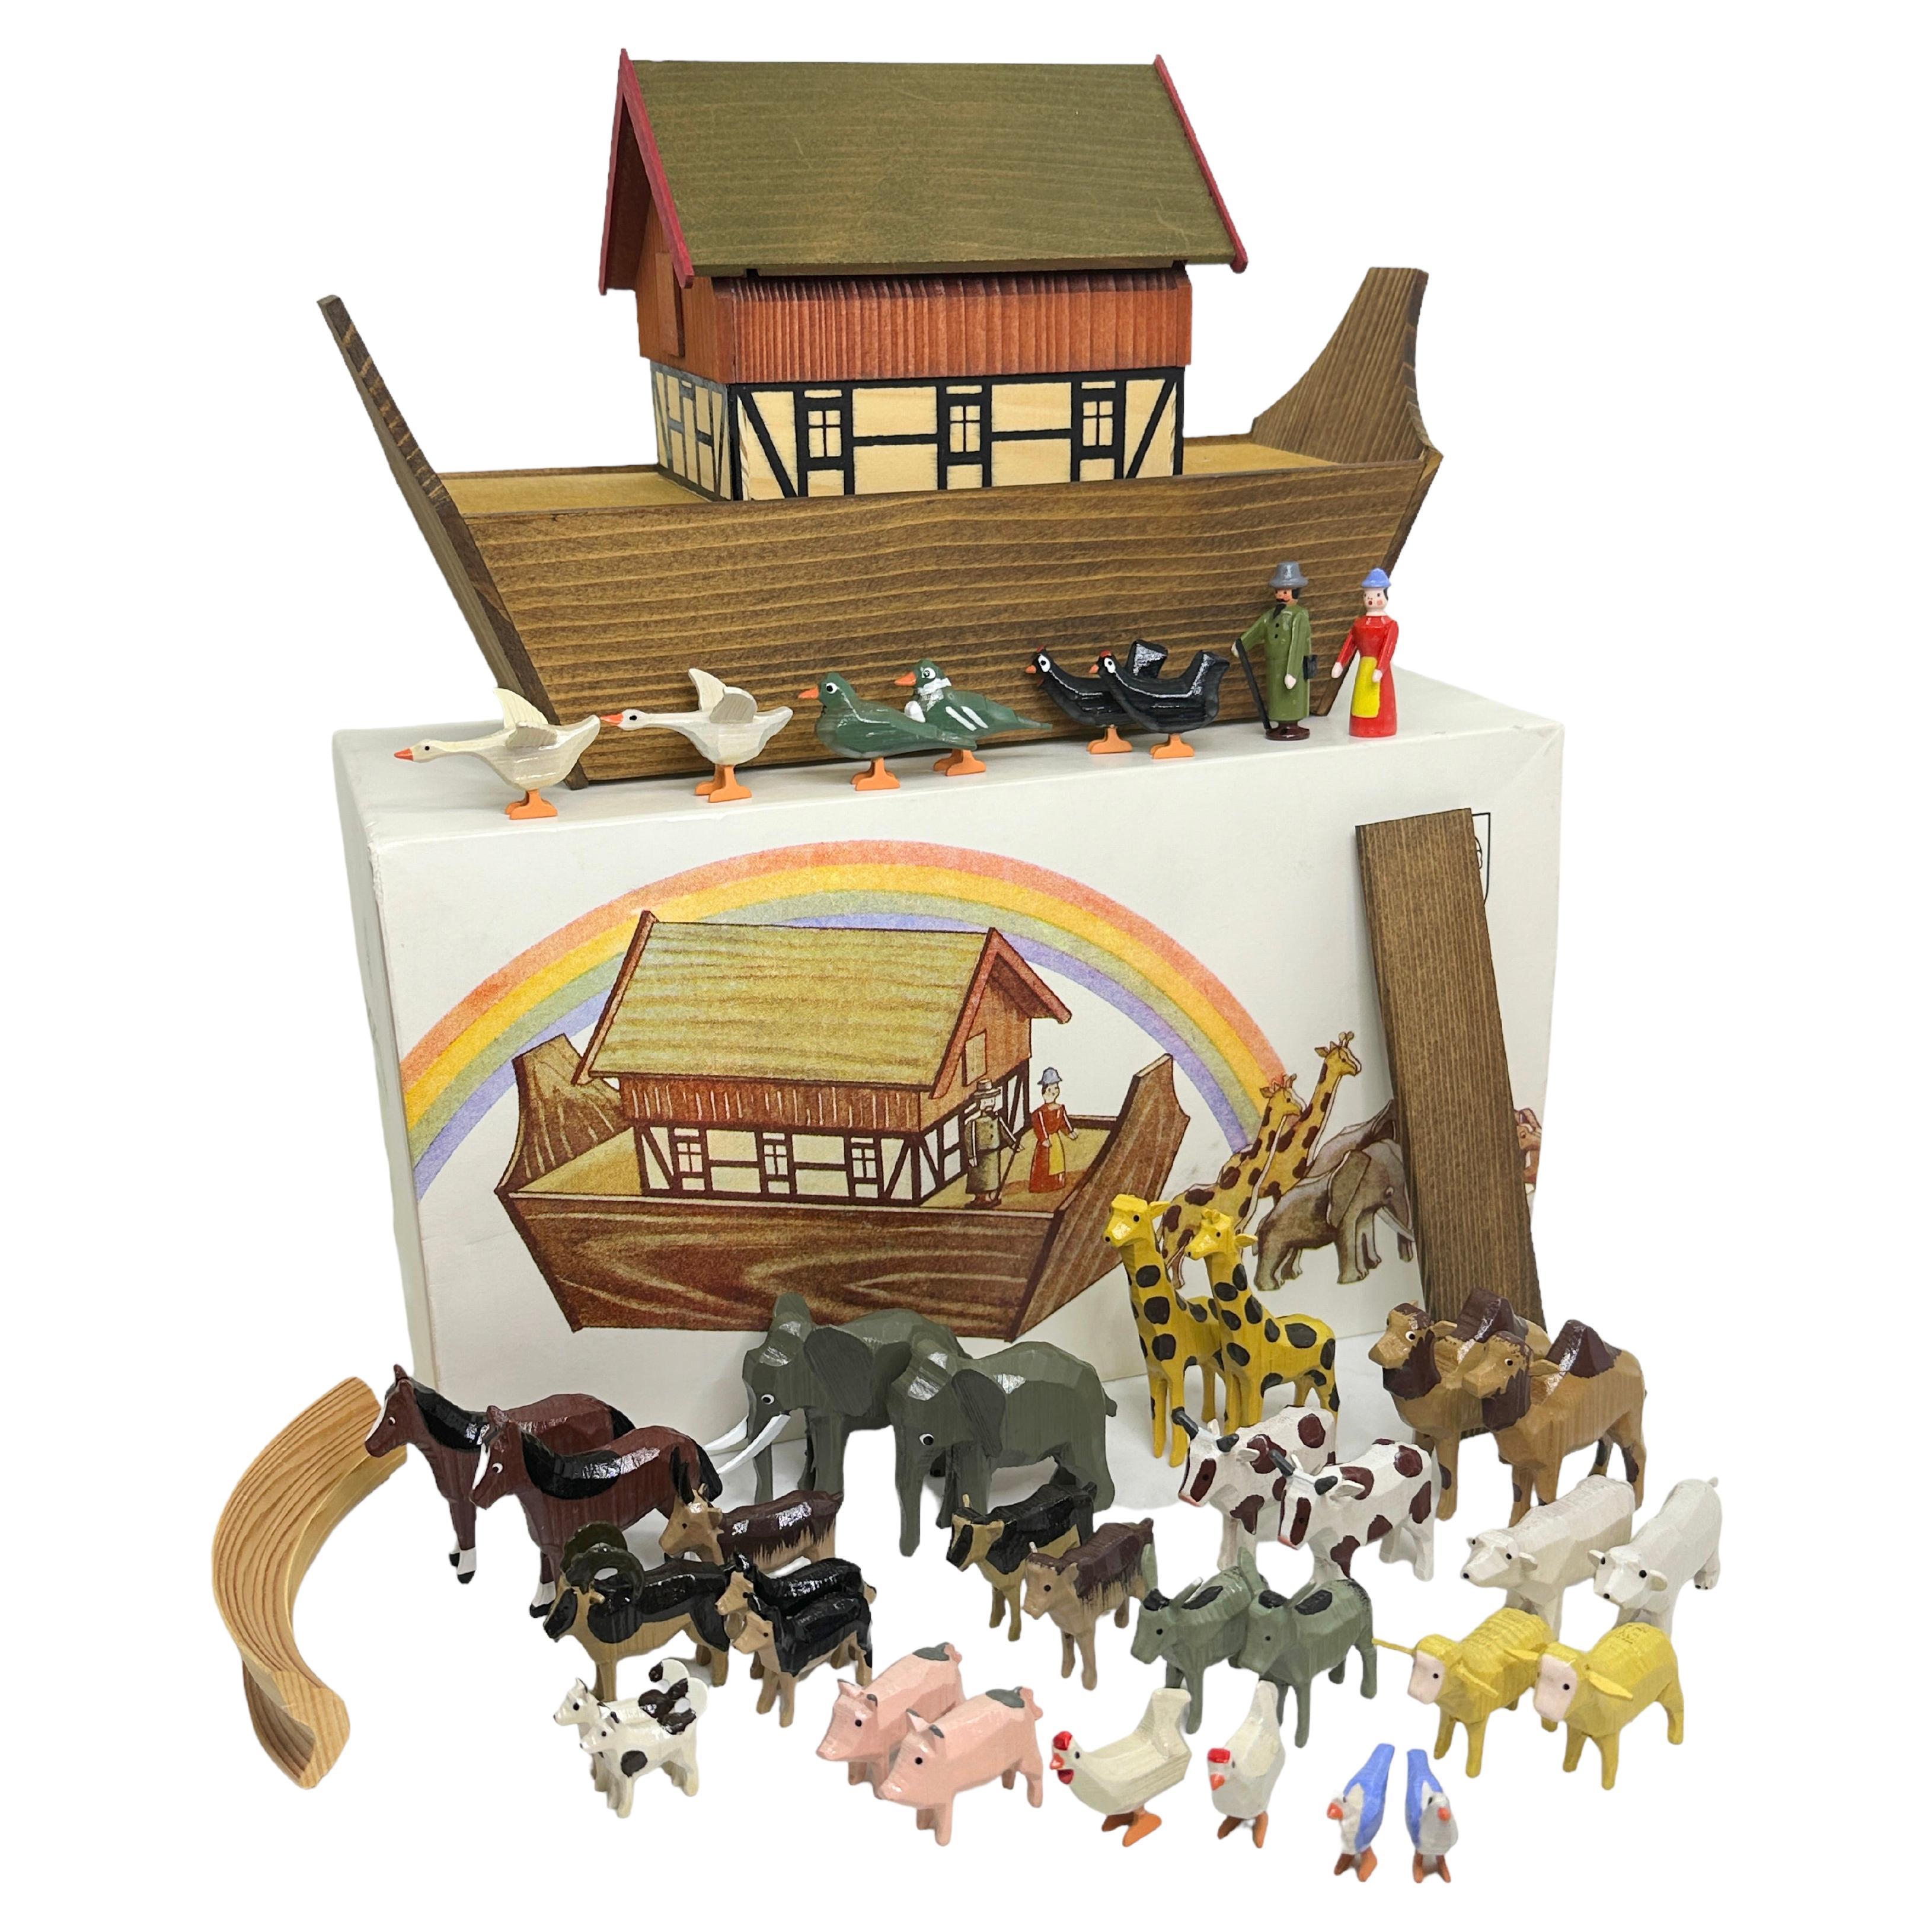  20. Jahrhundert Erzgebirge Deutsch Noah's Arche Putz Spielzeug Set, Vintage Folk Art 